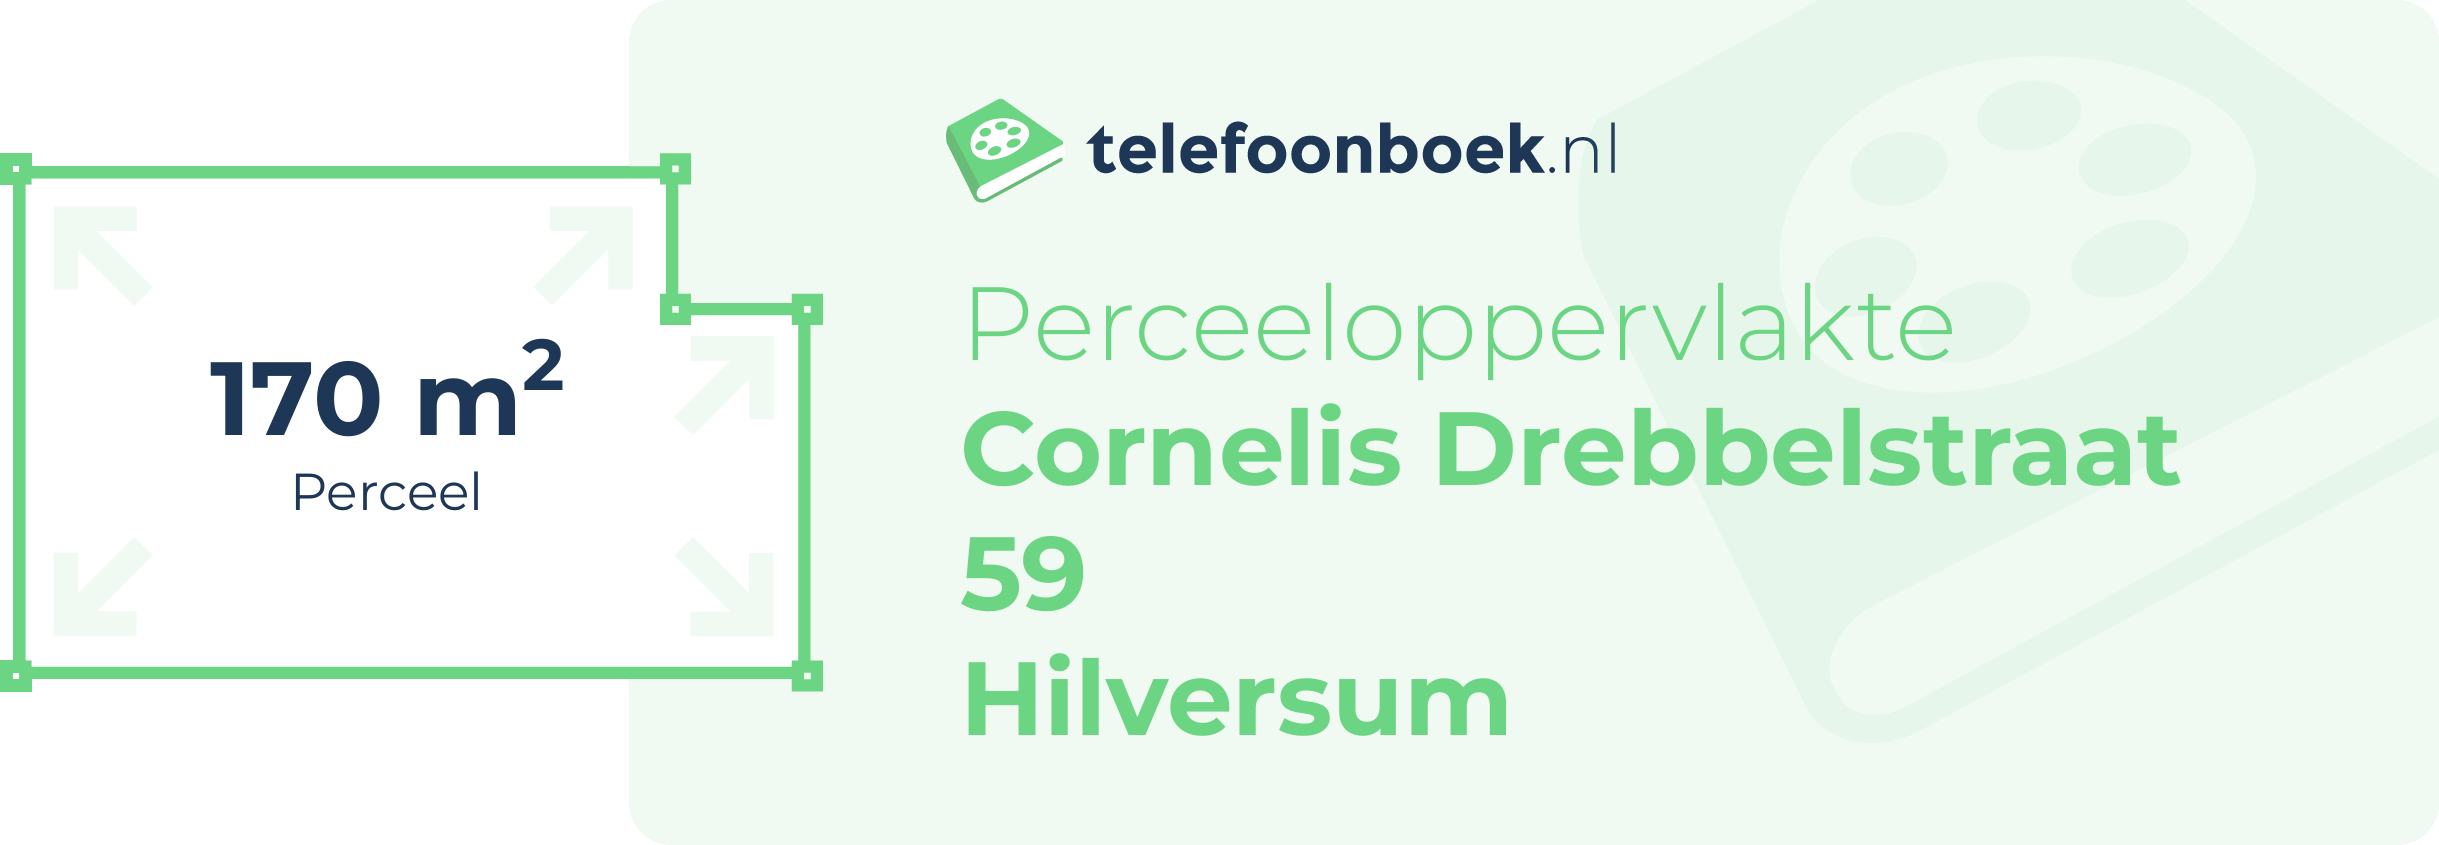 Perceeloppervlakte Cornelis Drebbelstraat 59 Hilversum